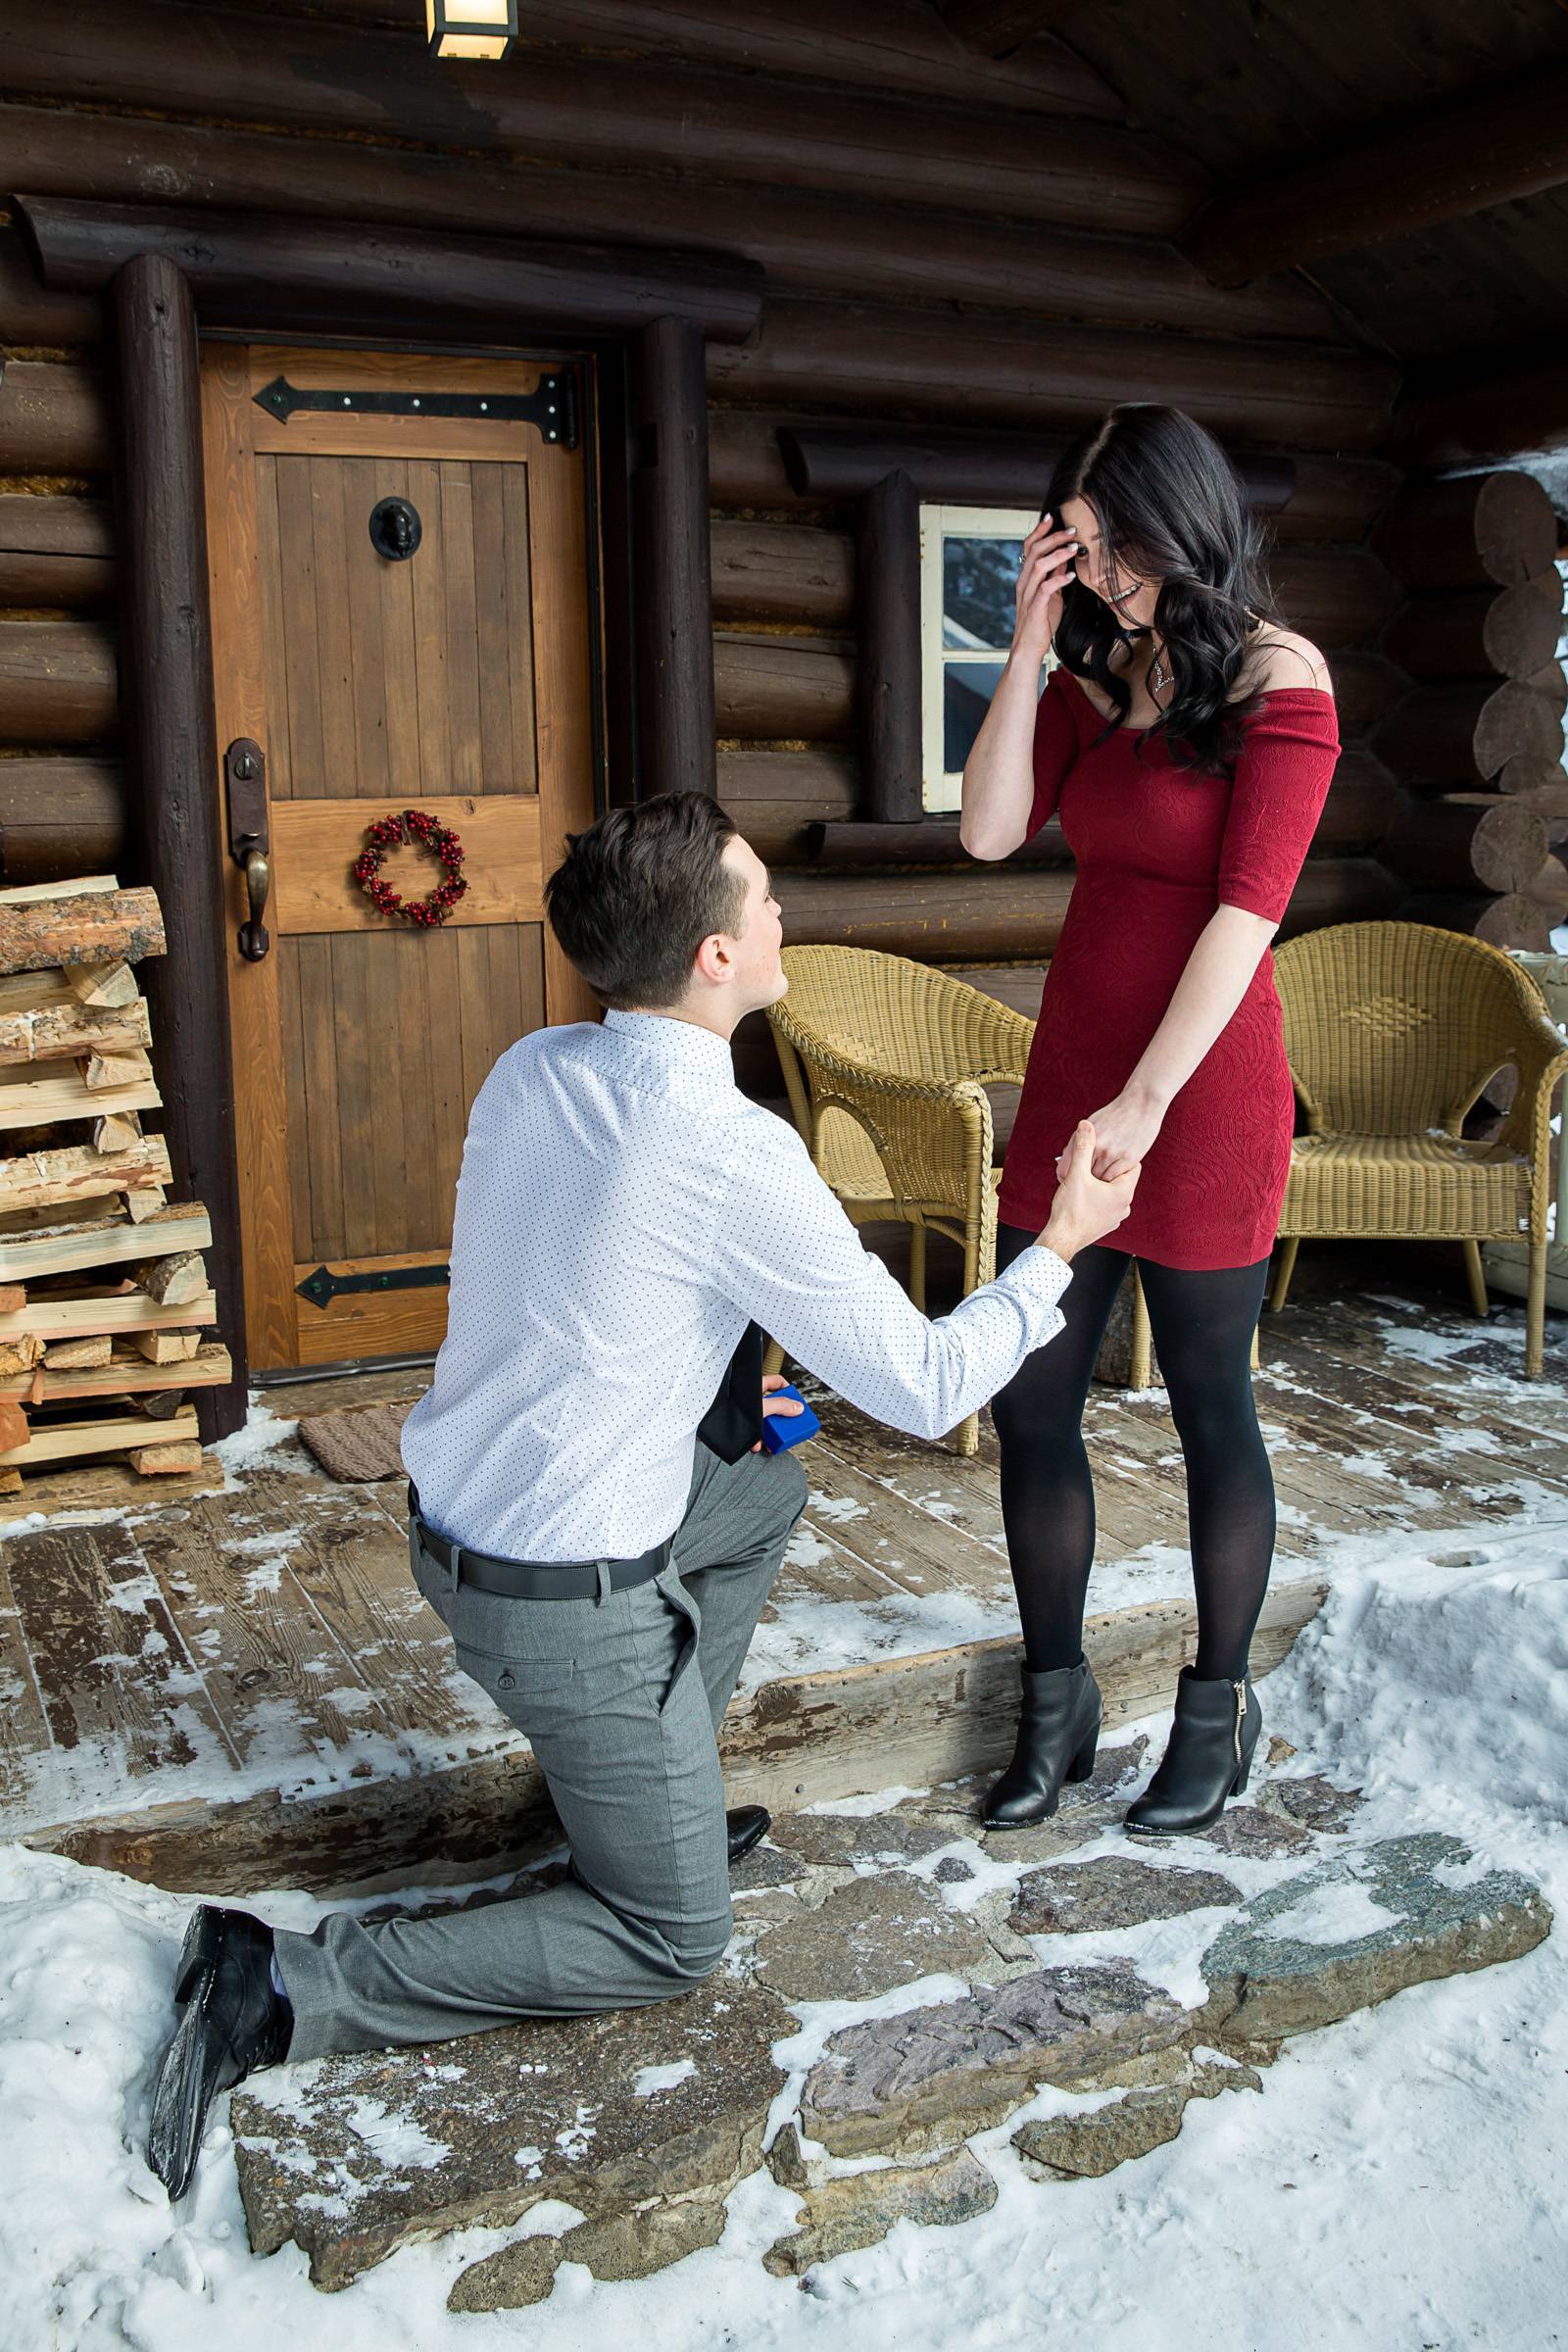 Storm Mountain Lodge Proposal, Banff Proposal, Banff wedding photographer, Banff proposal photograph